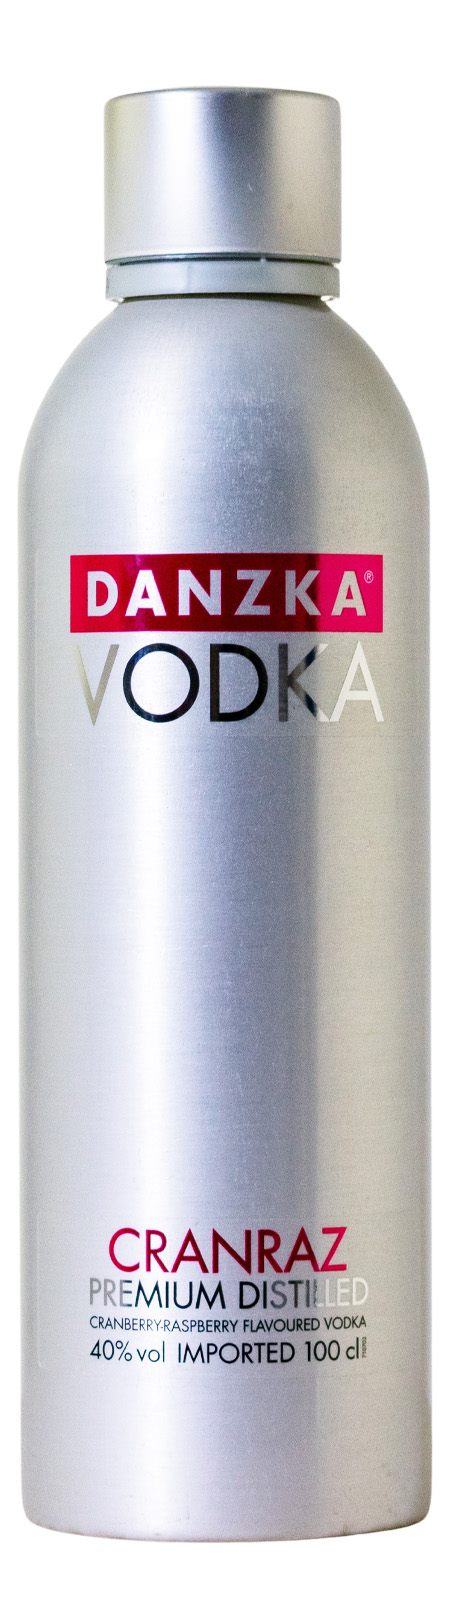 kaufen Danish Cranraz Vodka günstig Danzka (1L)